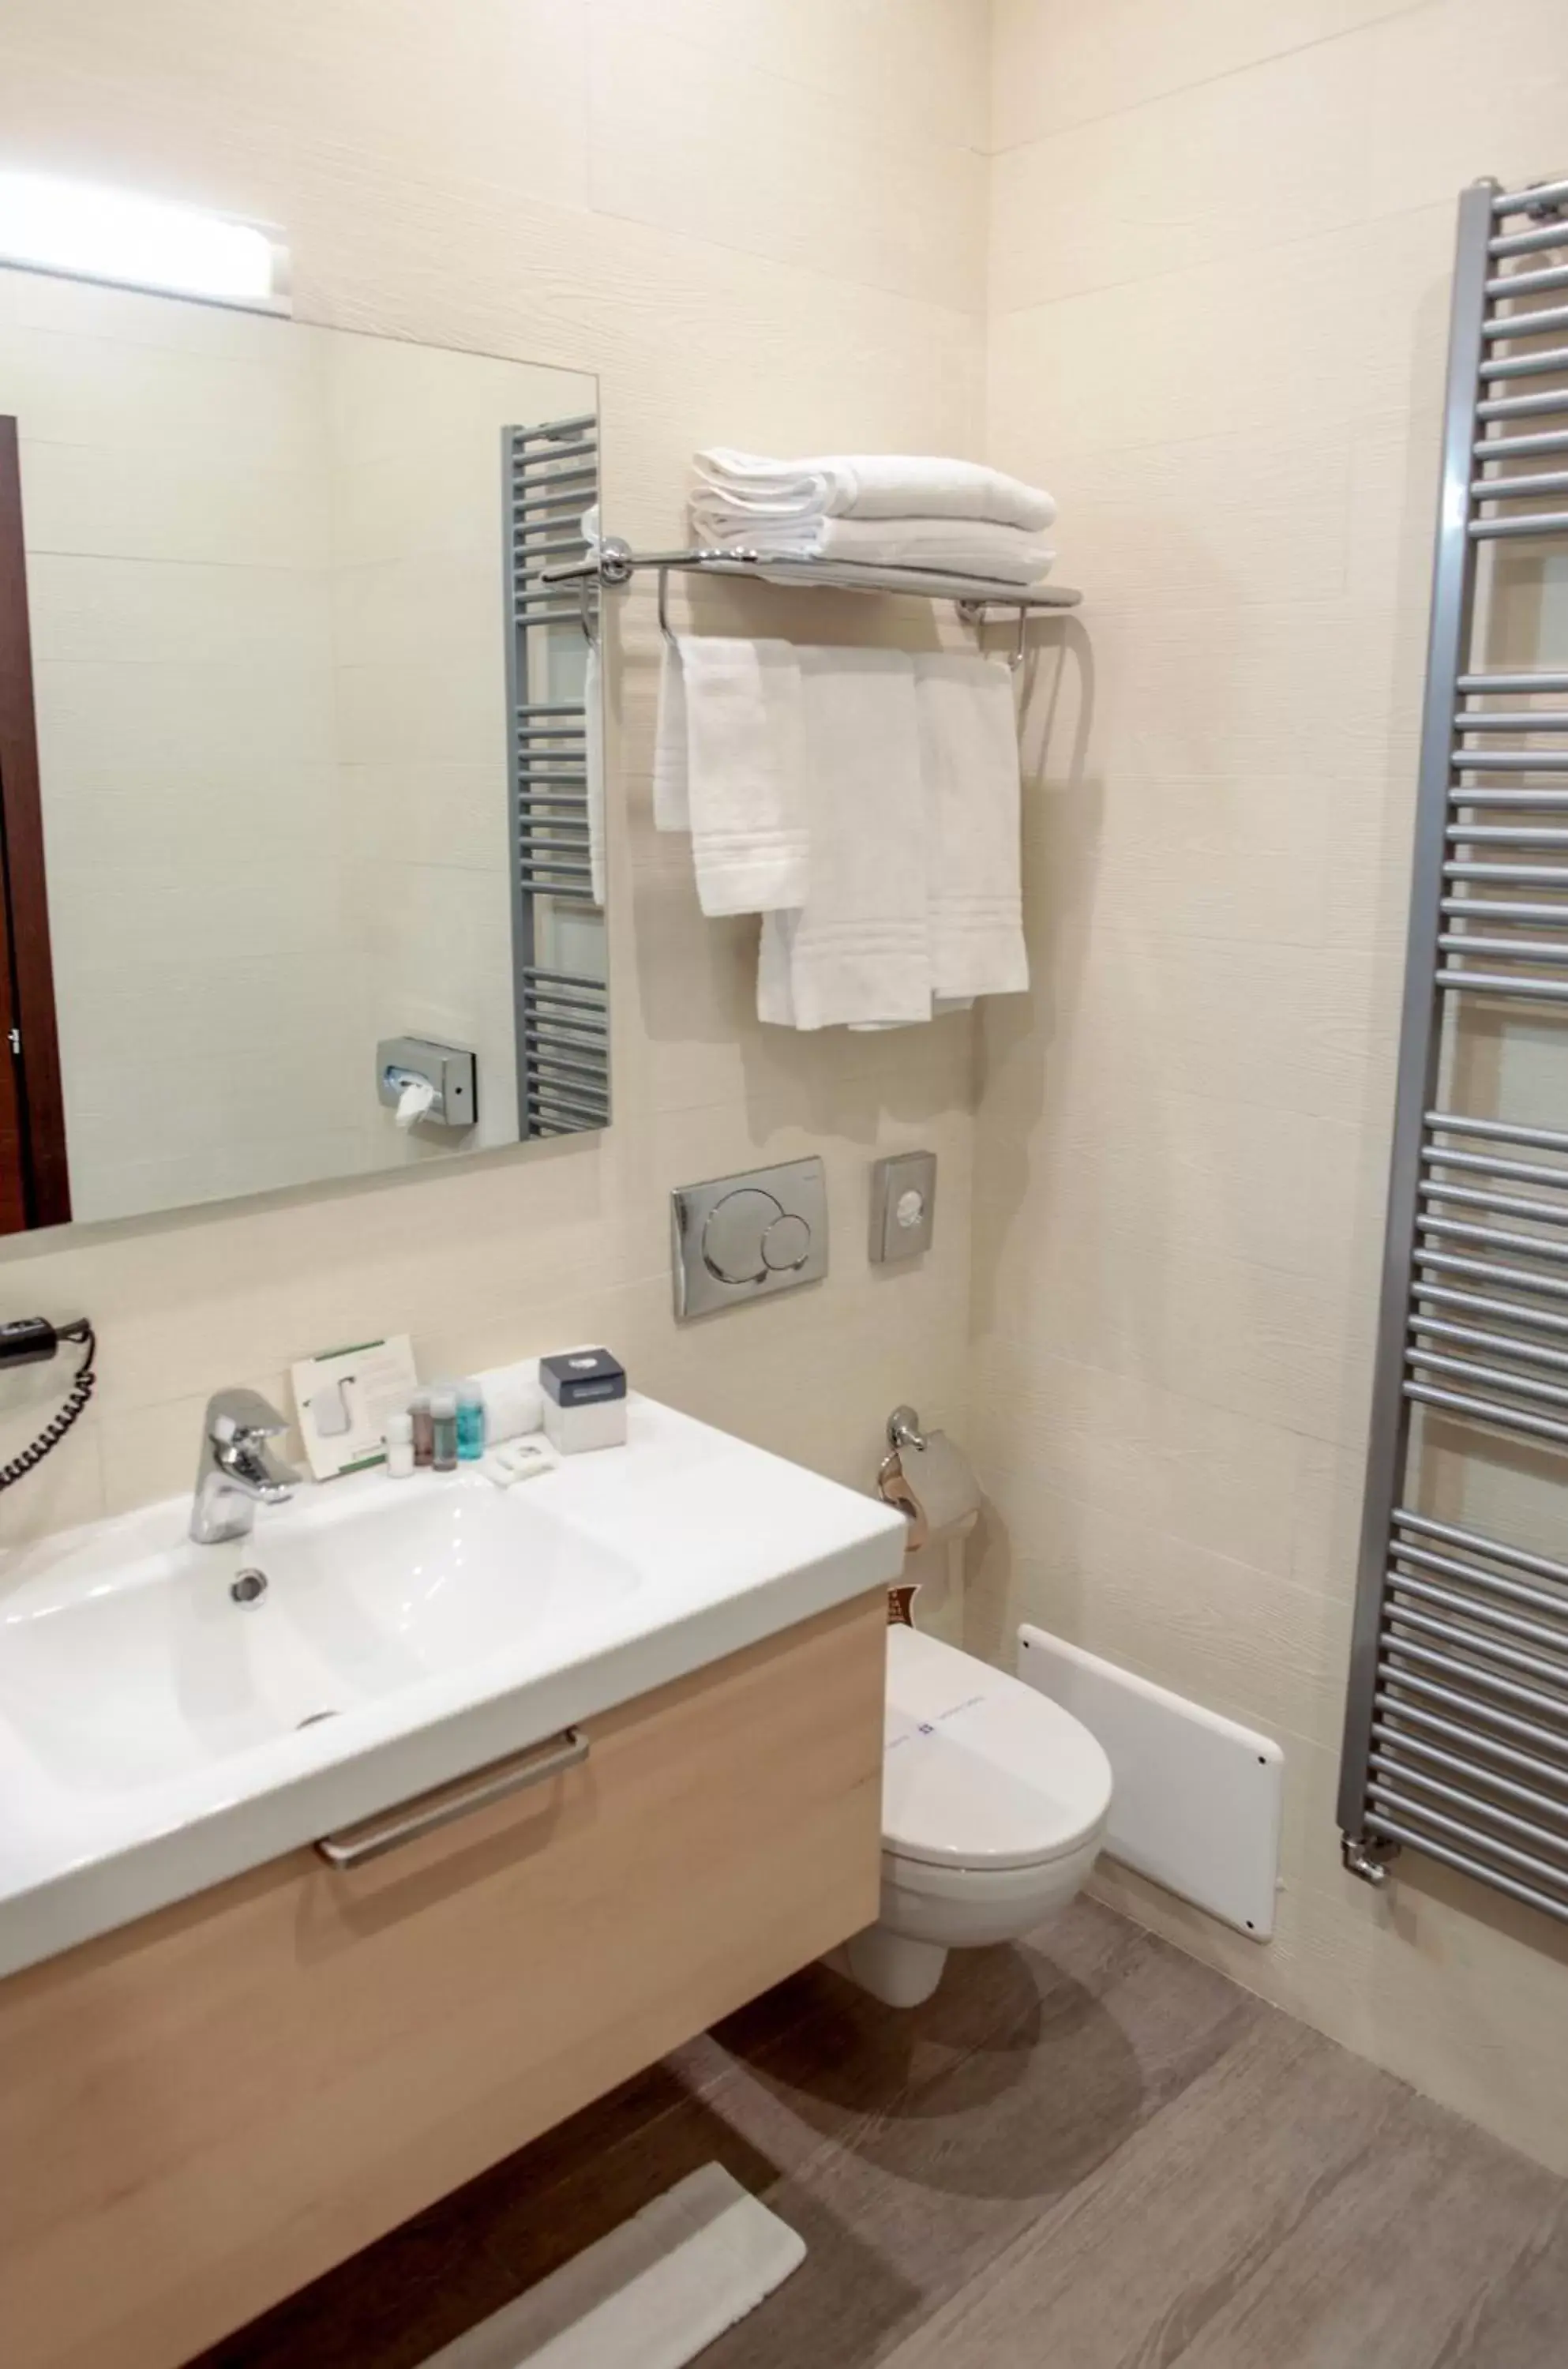 Bathroom in Best Western Plus Hotel Modena Resort